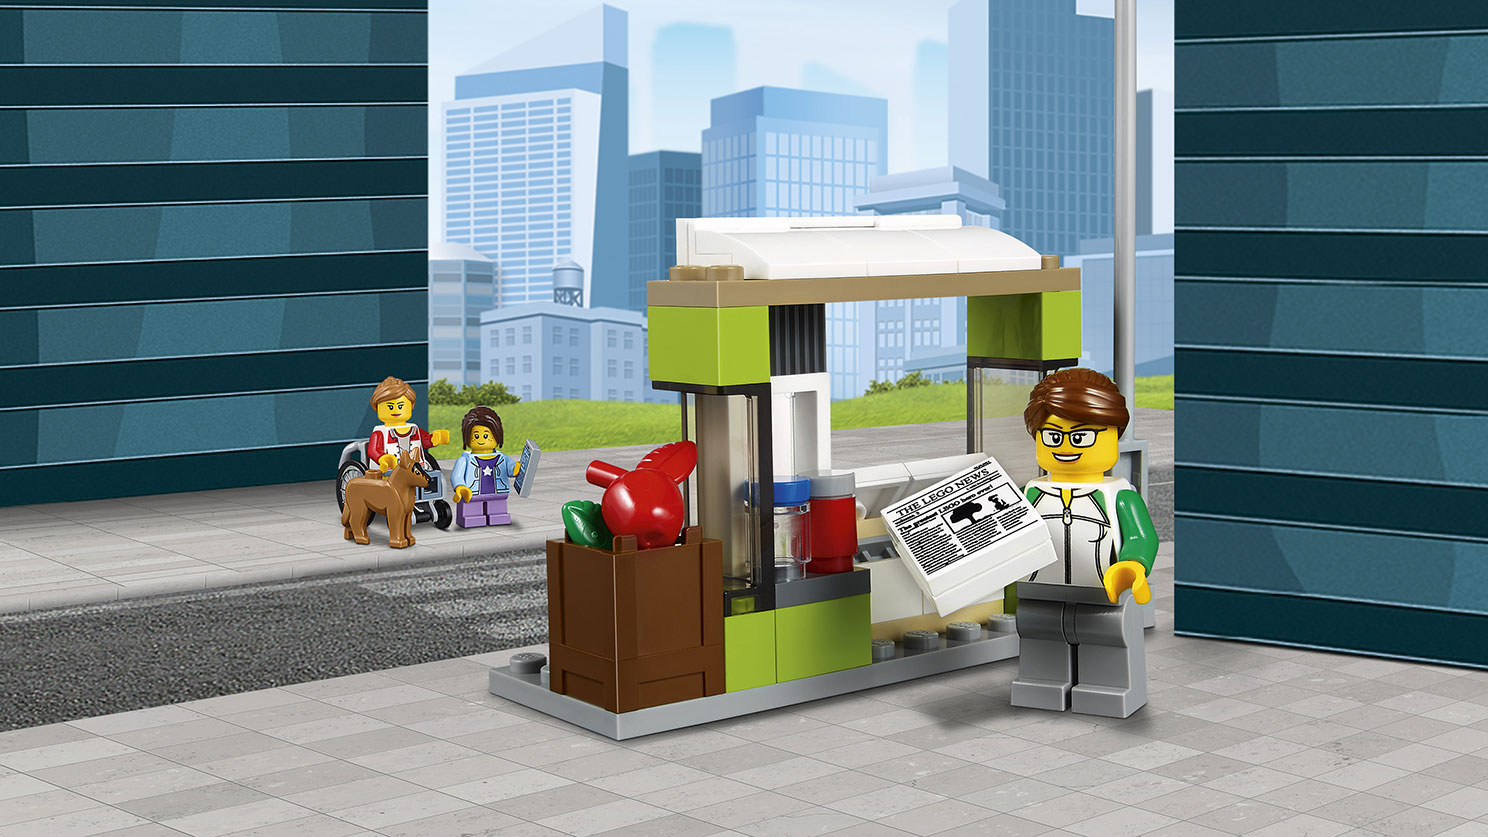 Lego City. Автобусная остановка  